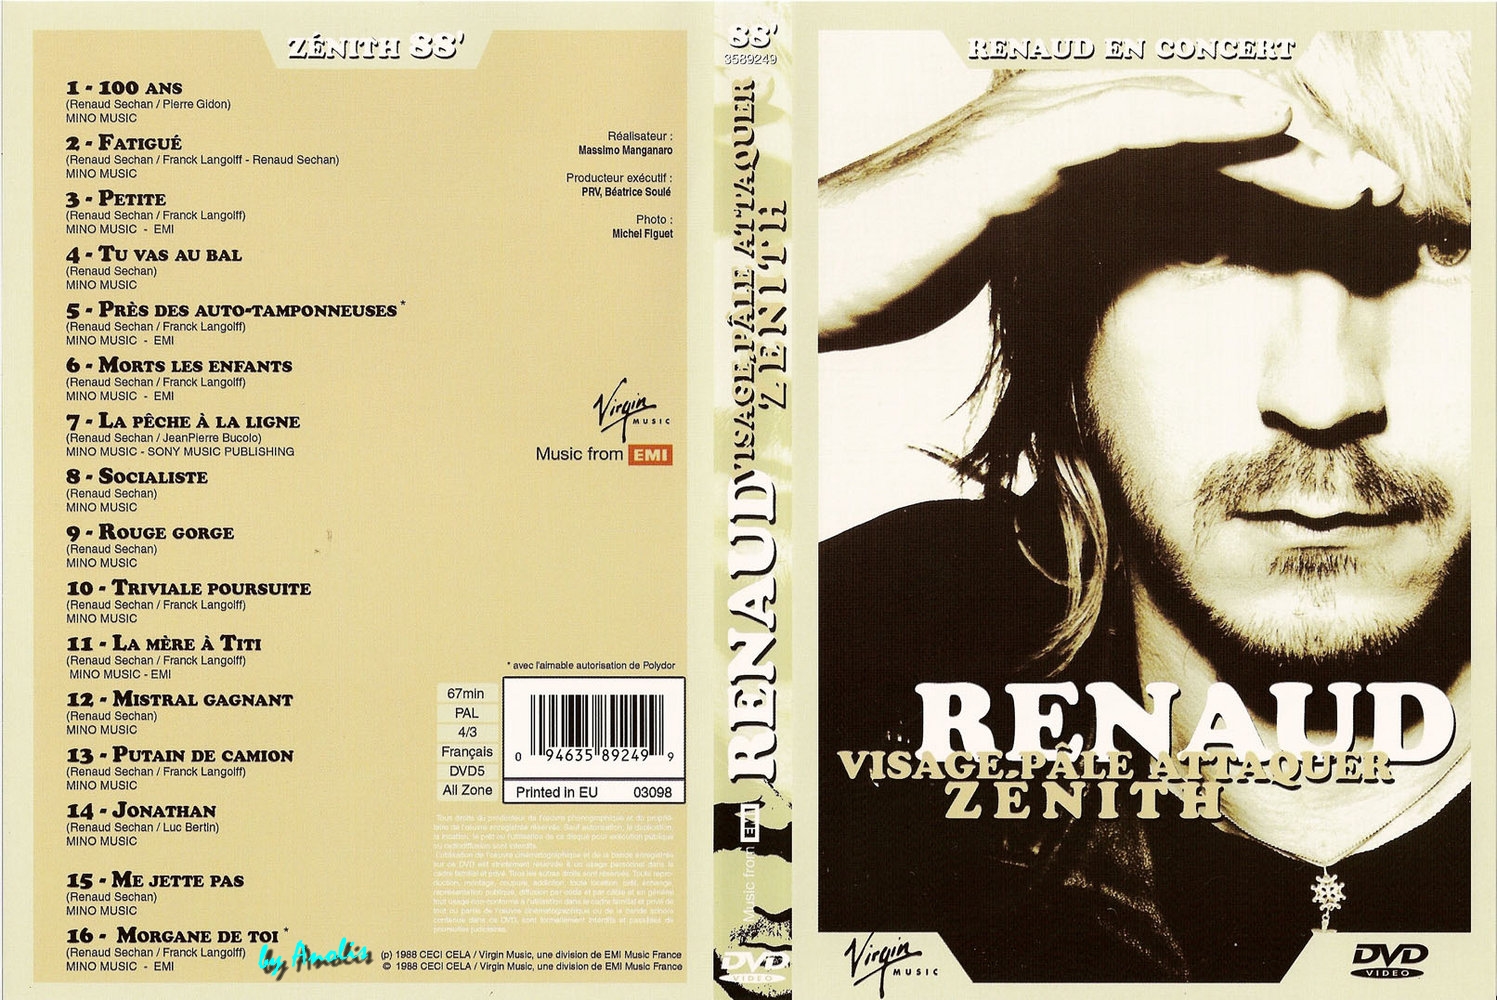 Jaquette DVD Renaud visage pale attaquer Zenith 1988